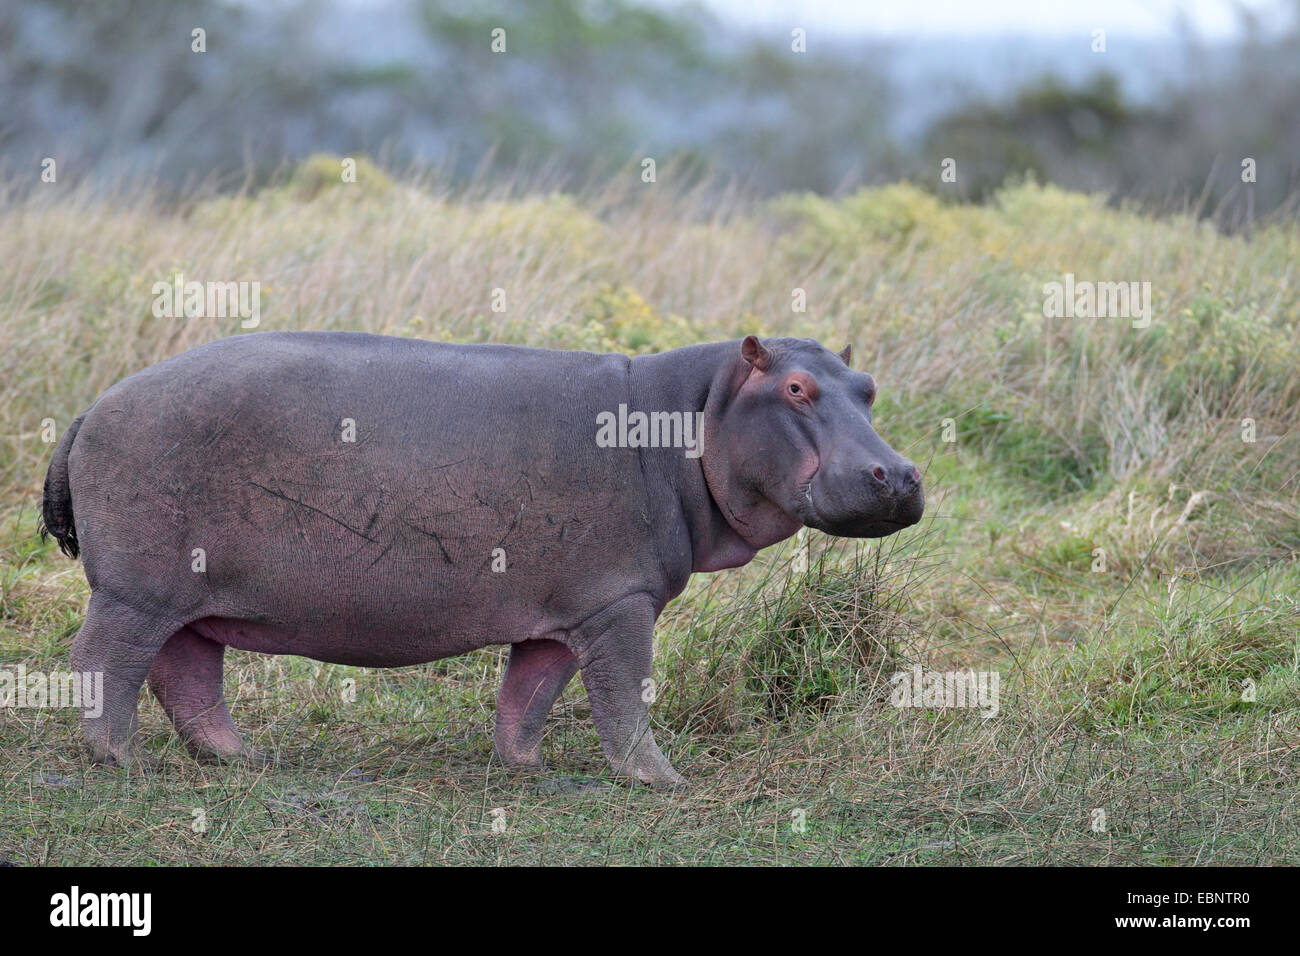 Hippopotame, hippopotame, hippopotame commun (Hippopotamus amphibius), Comité permanent sur les herbages au bord d'un lac, l'Afrique du Sud, Sainte-Lucie Wetland Park Banque D'Images